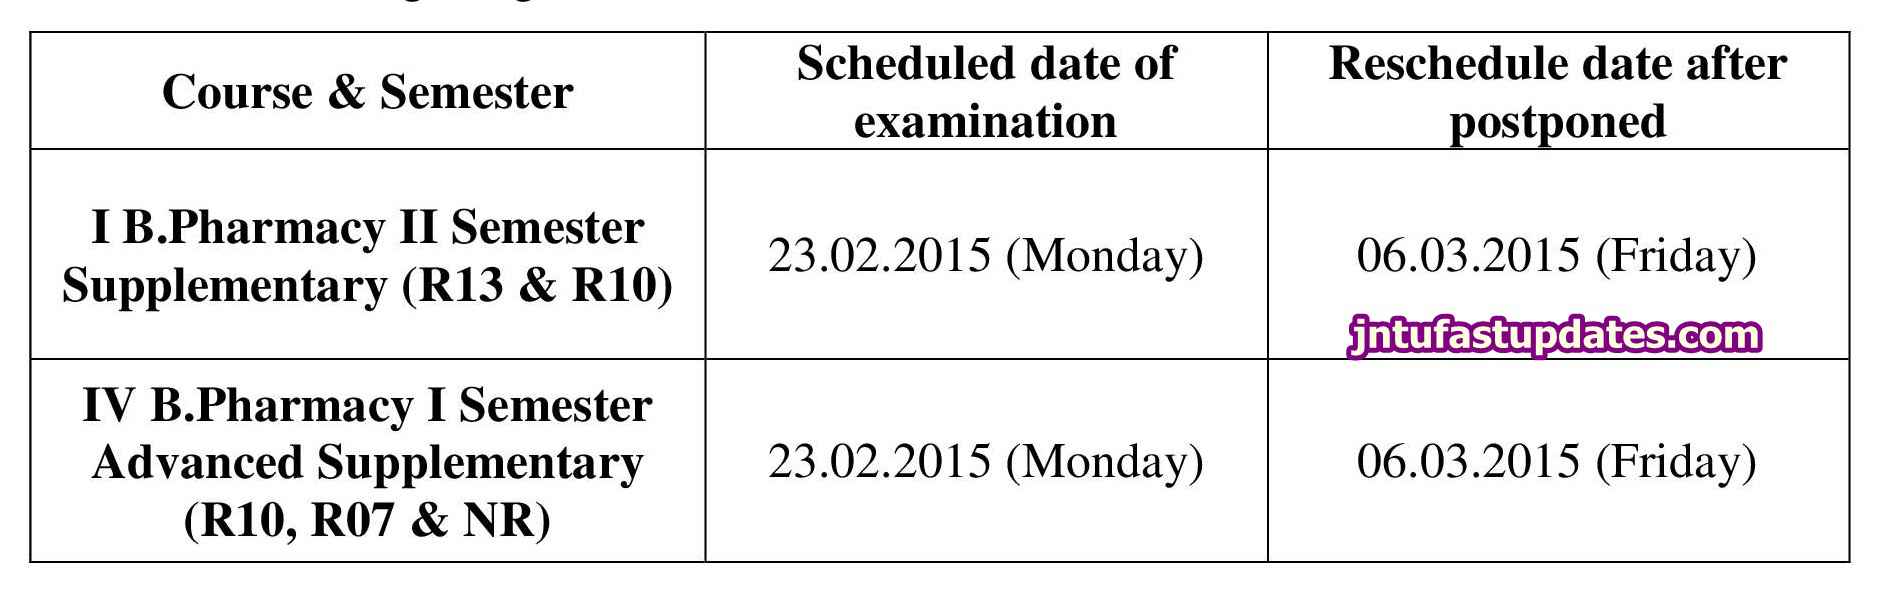 JNTUK Postpone of examination on 23-02-2015 in view of GPAT 2015